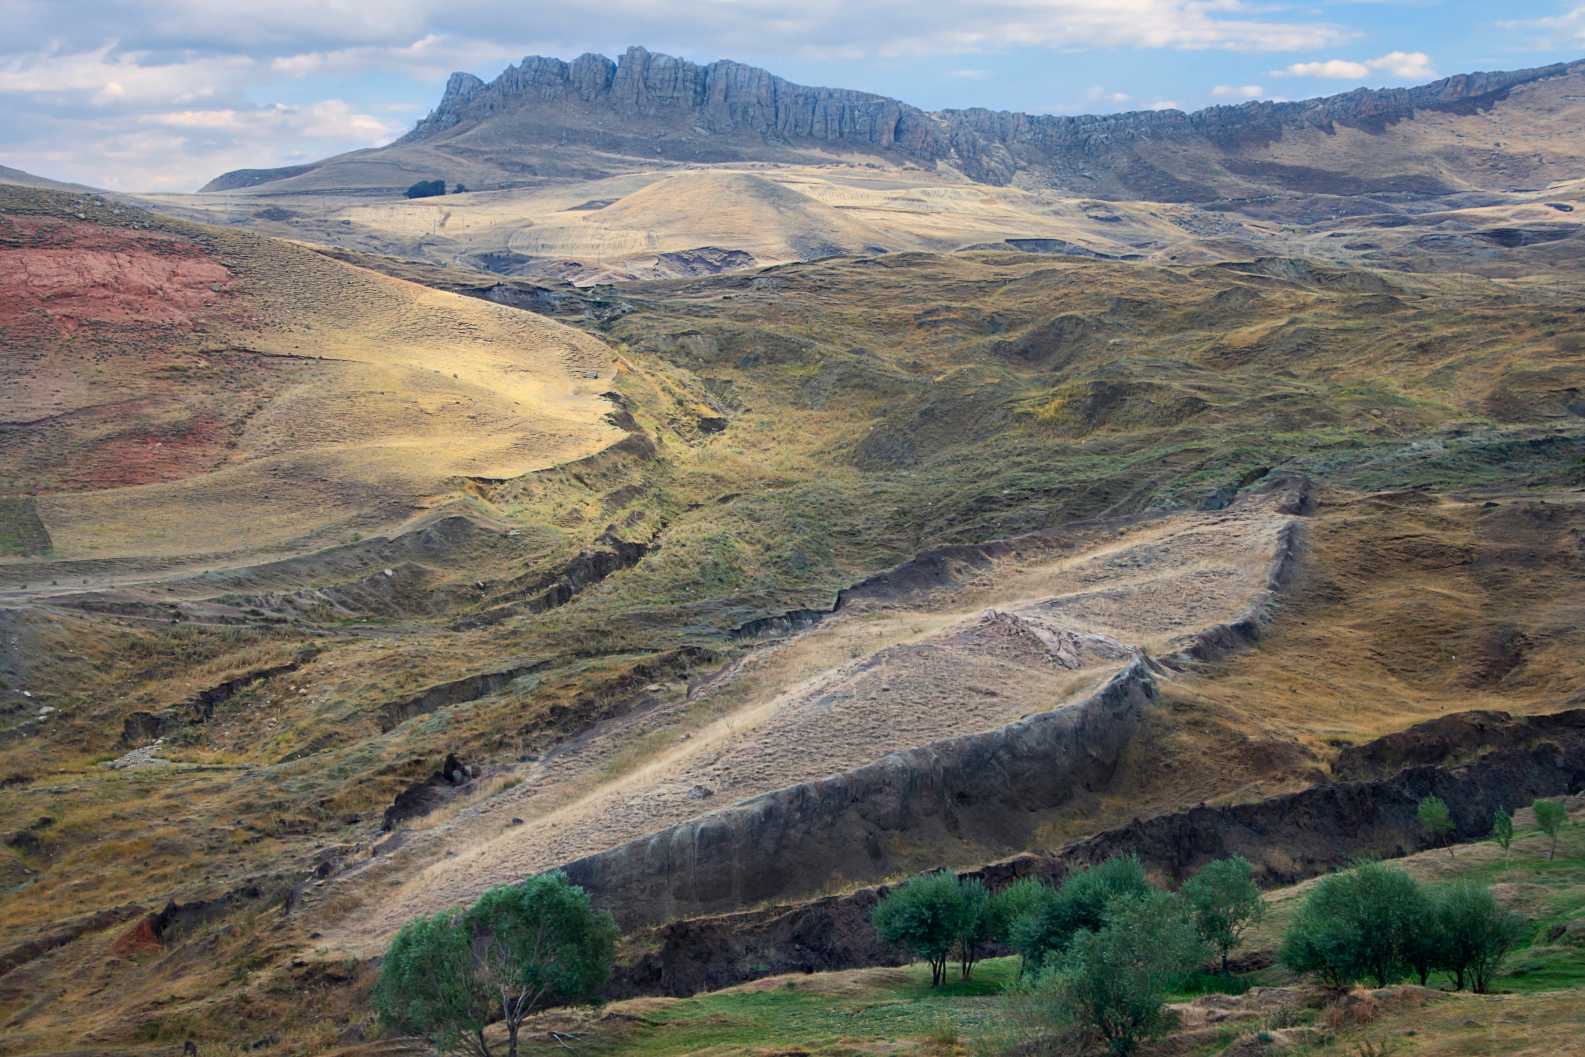 노아의 방주가 터키 도구베야지트에 머물렀던 것으로 여겨지는 아라라트 산 근처에 배 모양의 암석이 있는 노아의 방주 유적